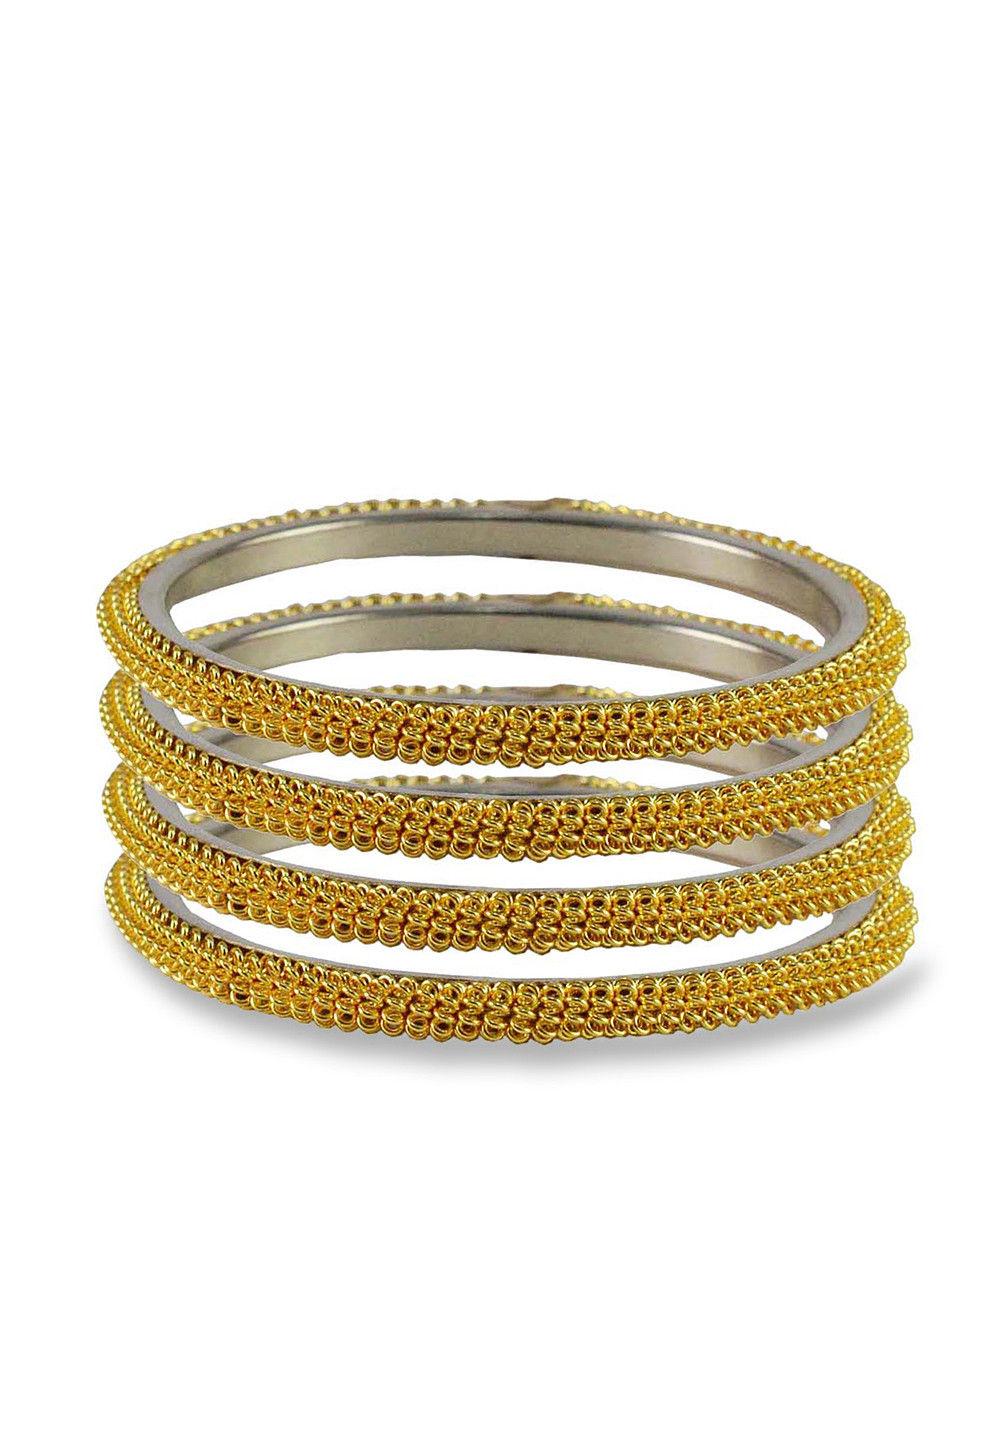 Buy Golden Metallic Bangles Online : JVK1063 - Utsav Fashion